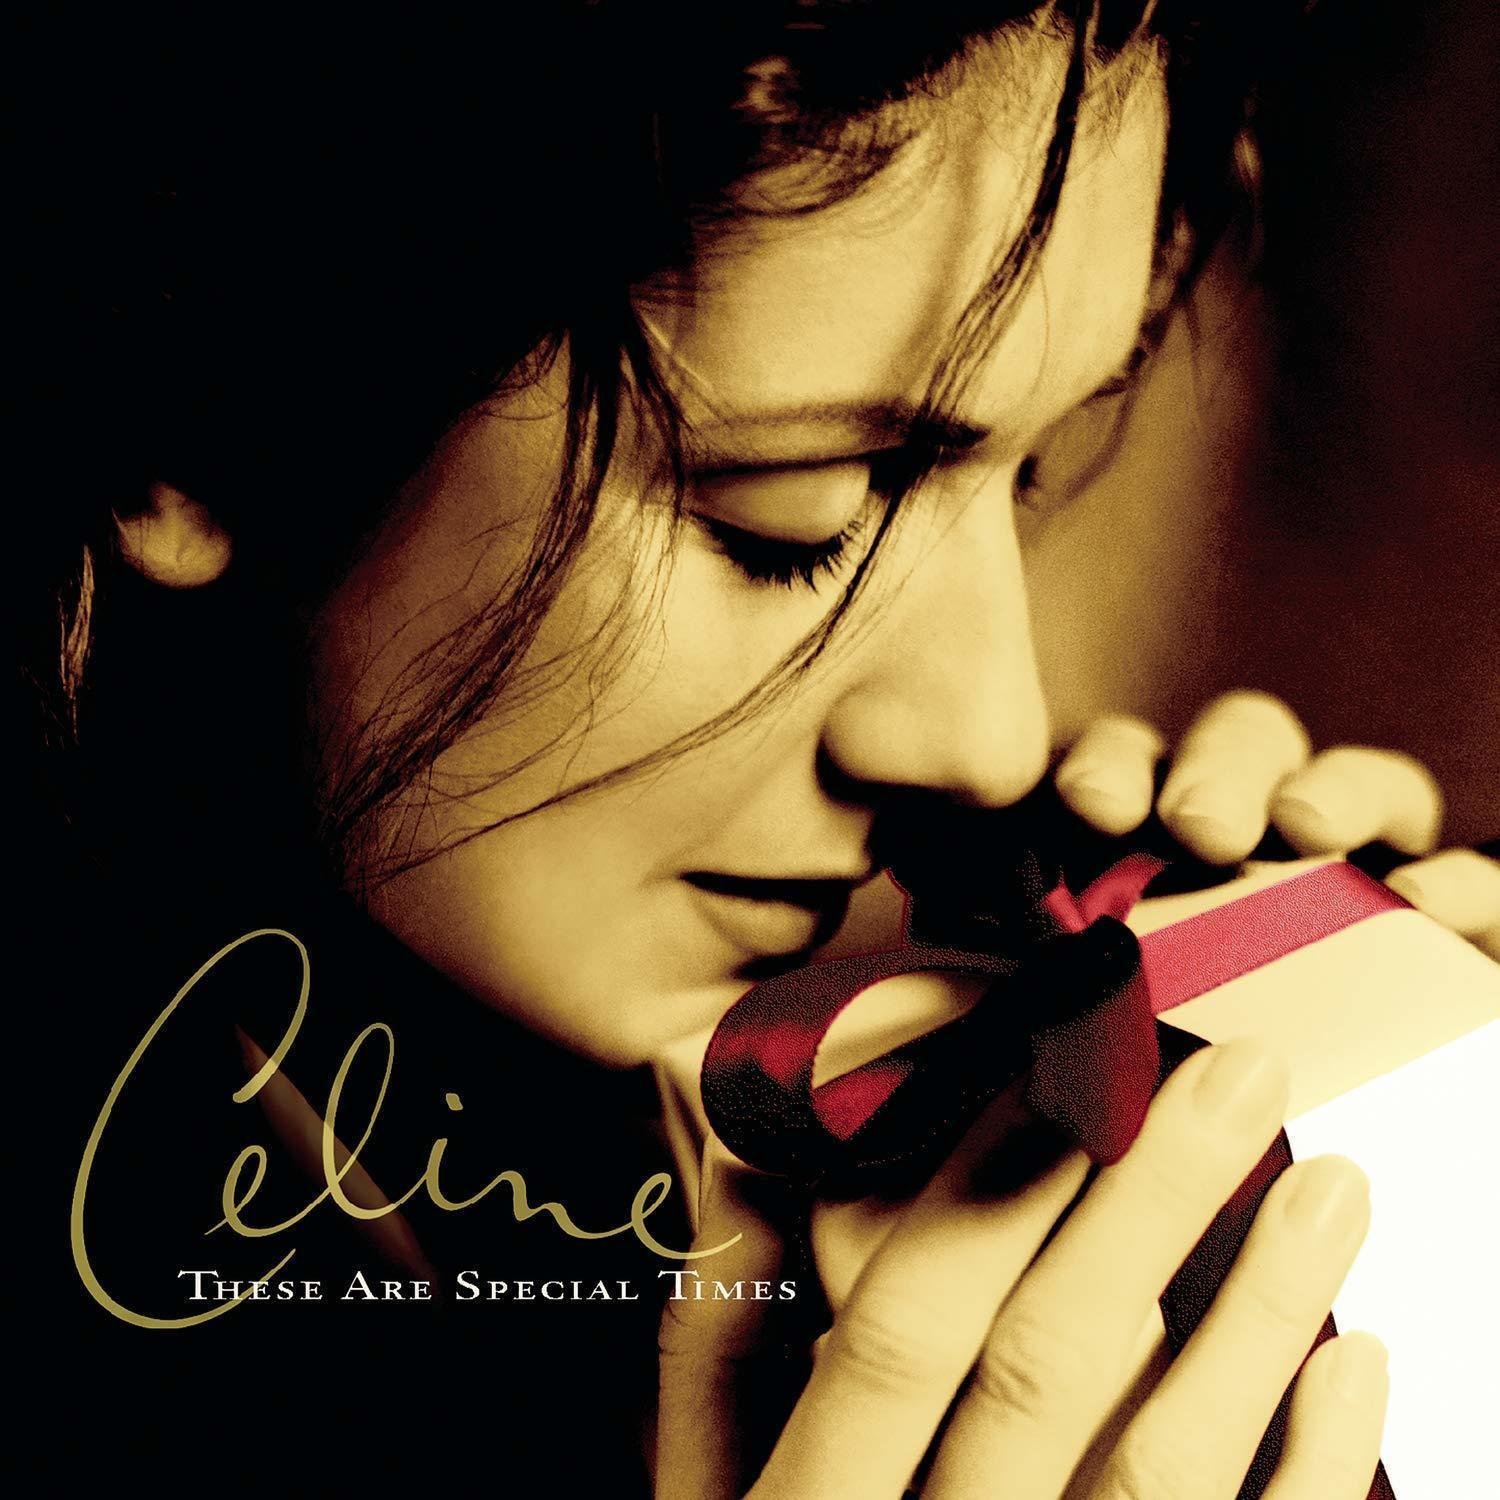 Disco de vinilo Celine Dion These Are Special Times (2 LP)